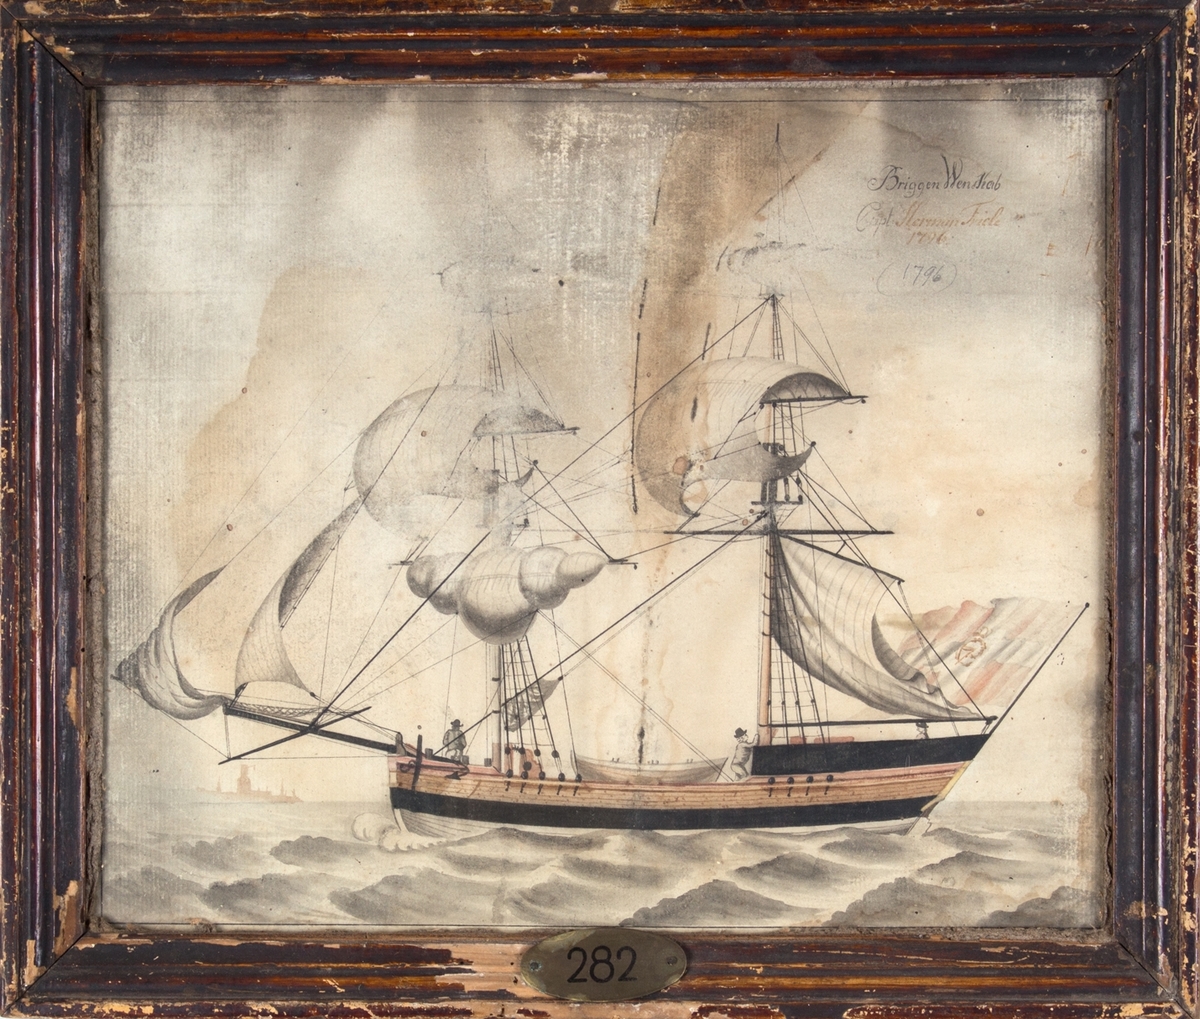 Skipsportrett av briggen WENSKAB. I akter fører skipet dansk handelsflagg med C7 i korset. I bakgrunnen til venstre i motivet skimtes spir og tårn fra en ukjent havn. Tre menn og en livbåt ombord på fartøyet.